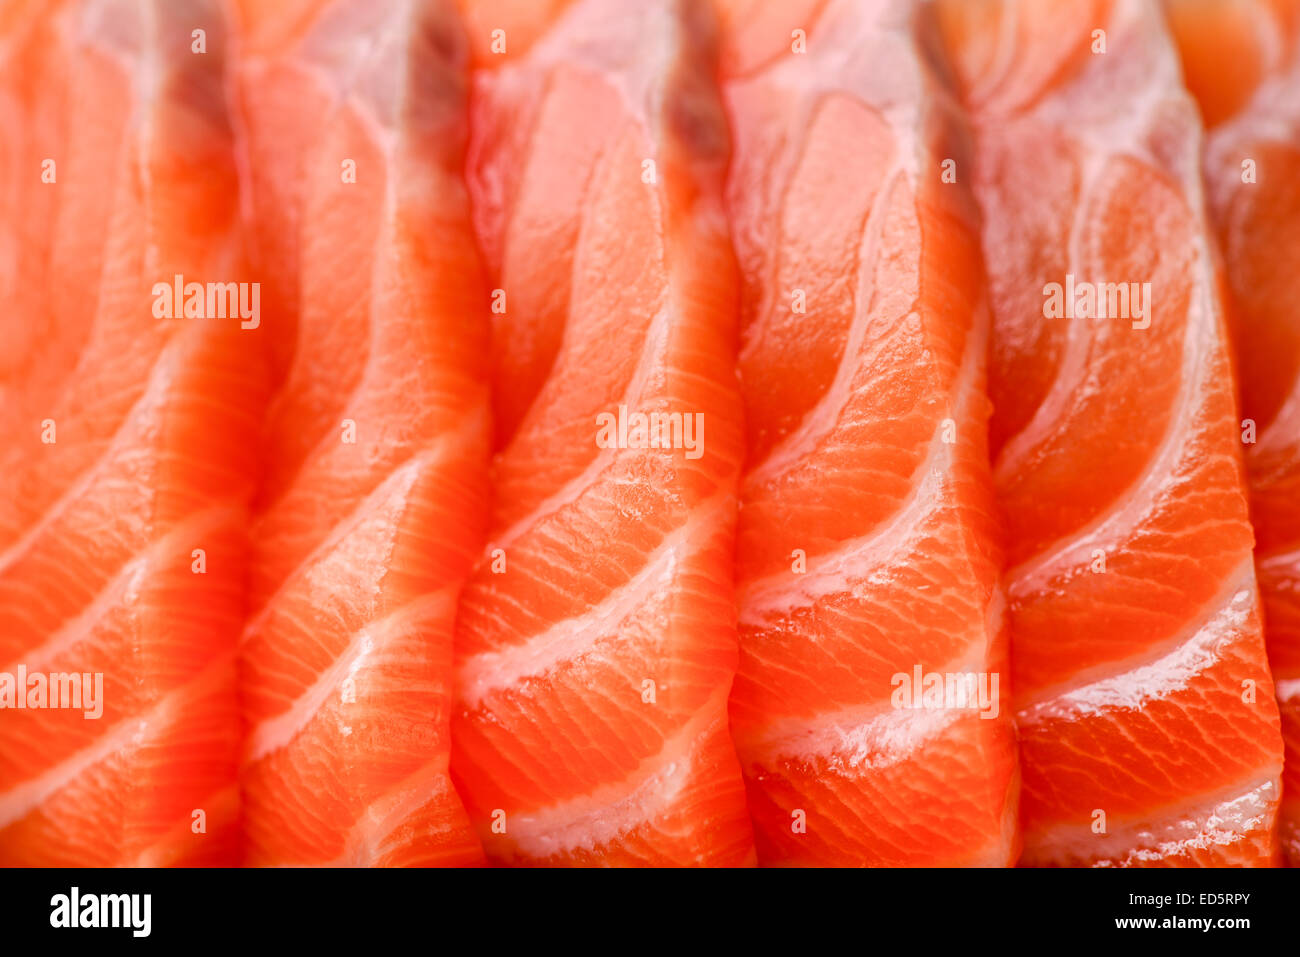 japanese food sushi salmon fish Stock Photo